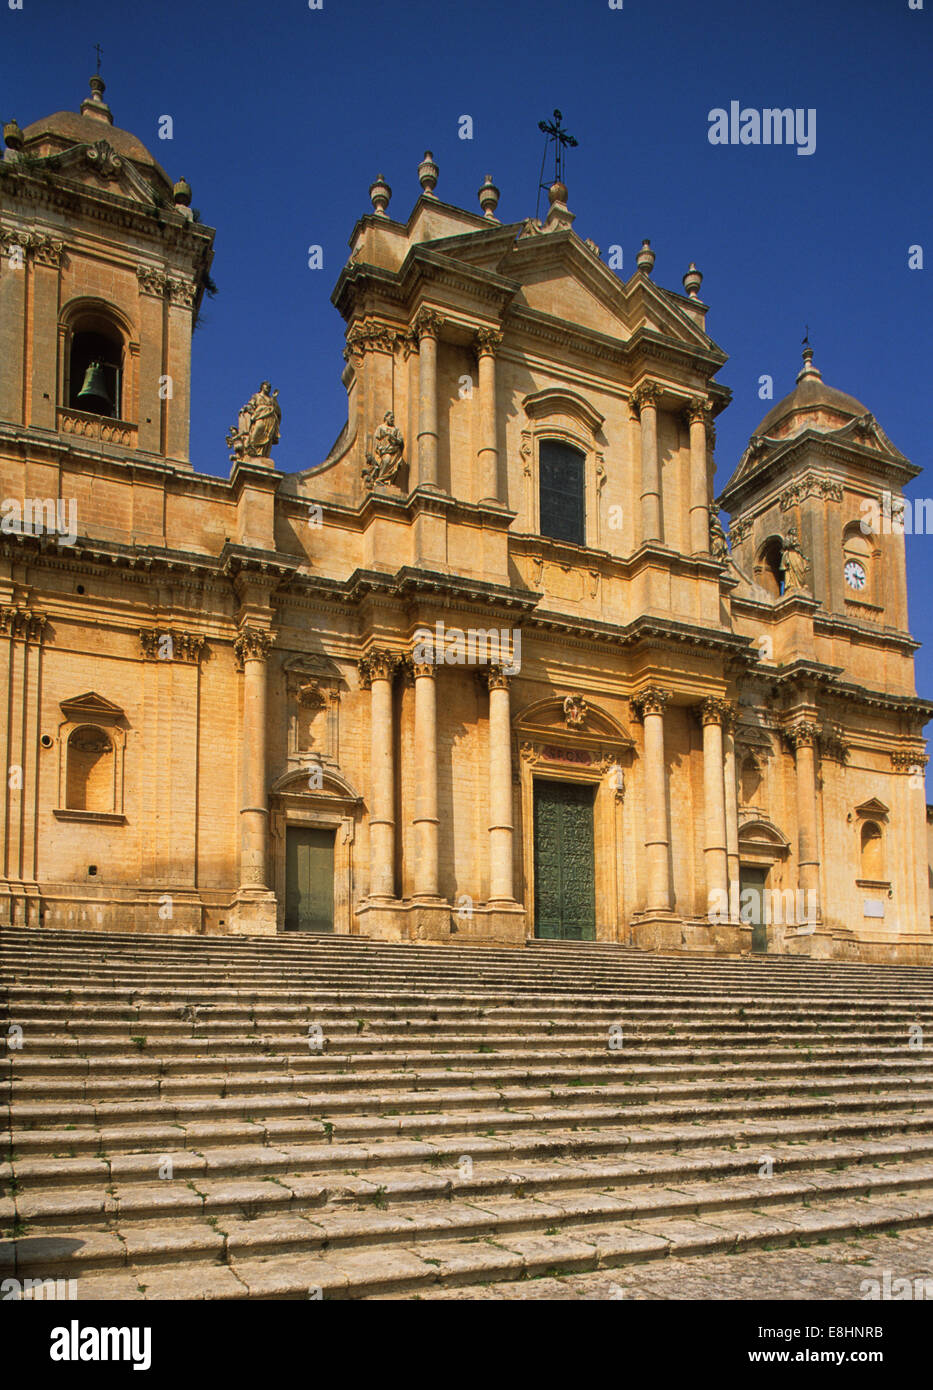 Sizilien ist die größte Insel im Mittelmeer. Es wurde 1860 italienisch, hat aber eine sehr ausgeprägte Landschaft und Kultur. Das Bild zeigt die Kathedrale von Noto, bevor sie beim Erdbeben von 2007 zerstört wurde. Stockfoto